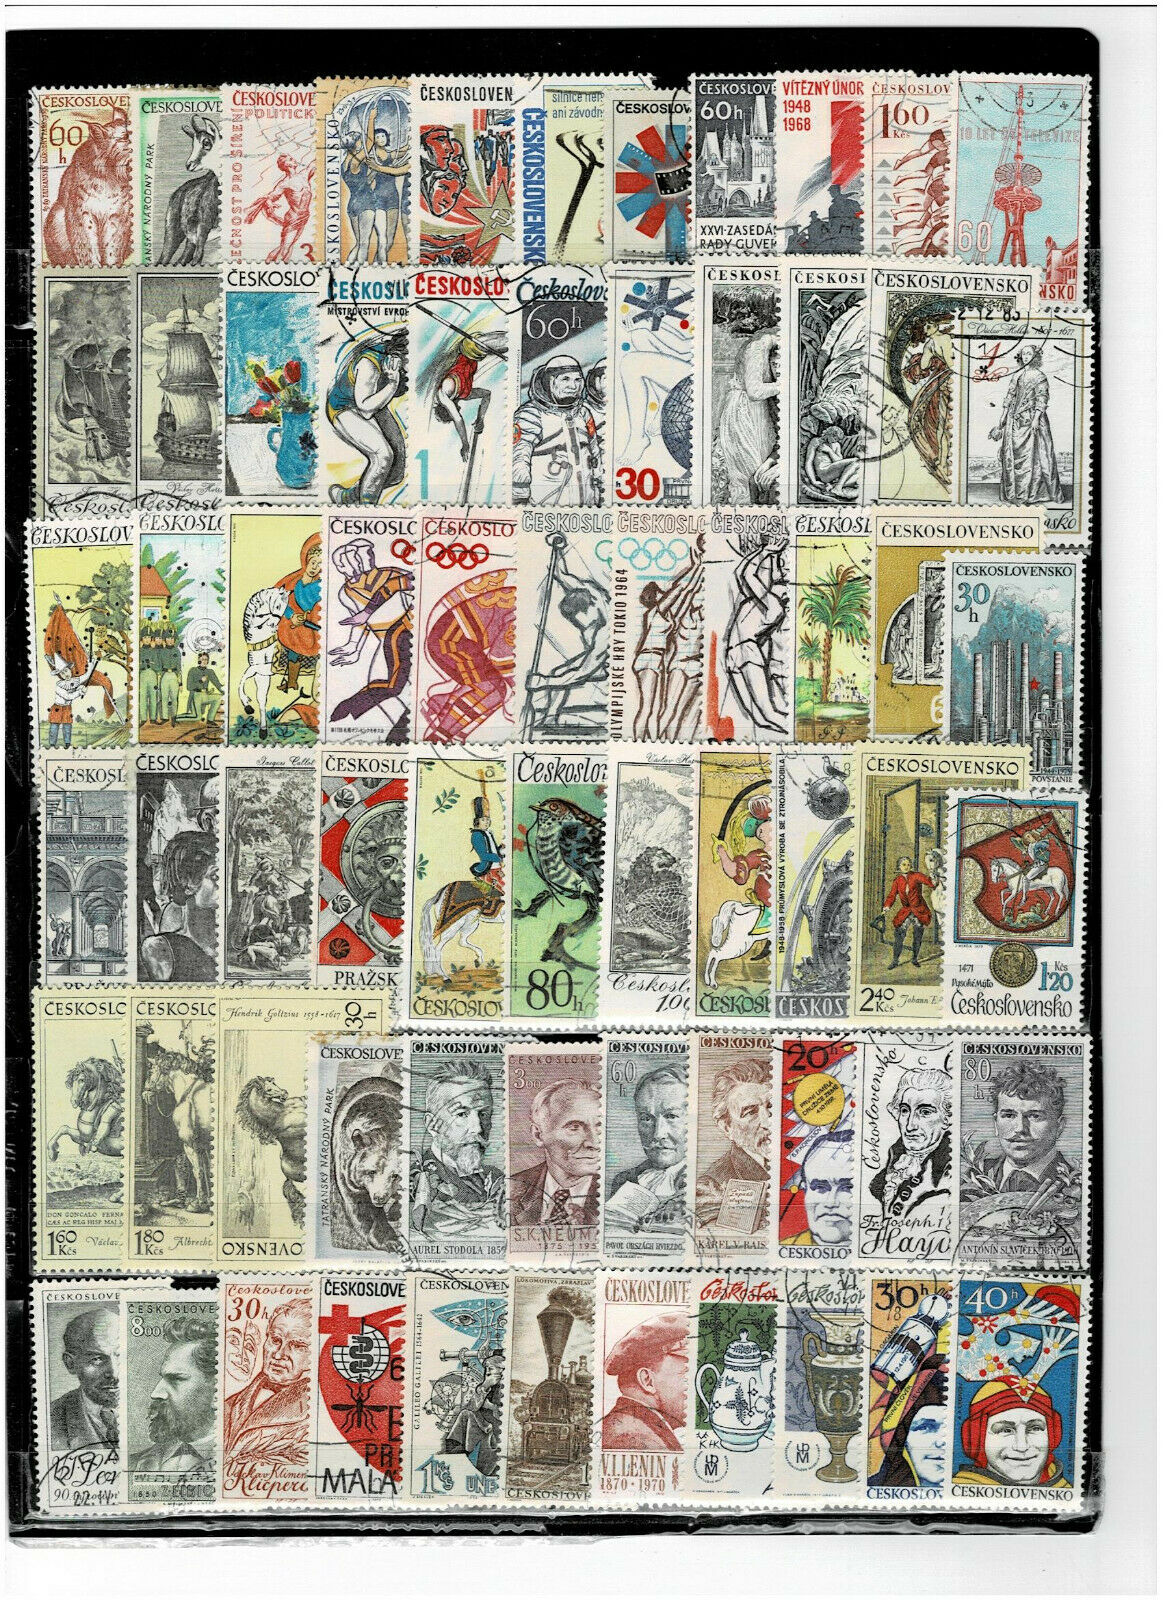 Ceskoslovensko   475  Stamps   ( Used )